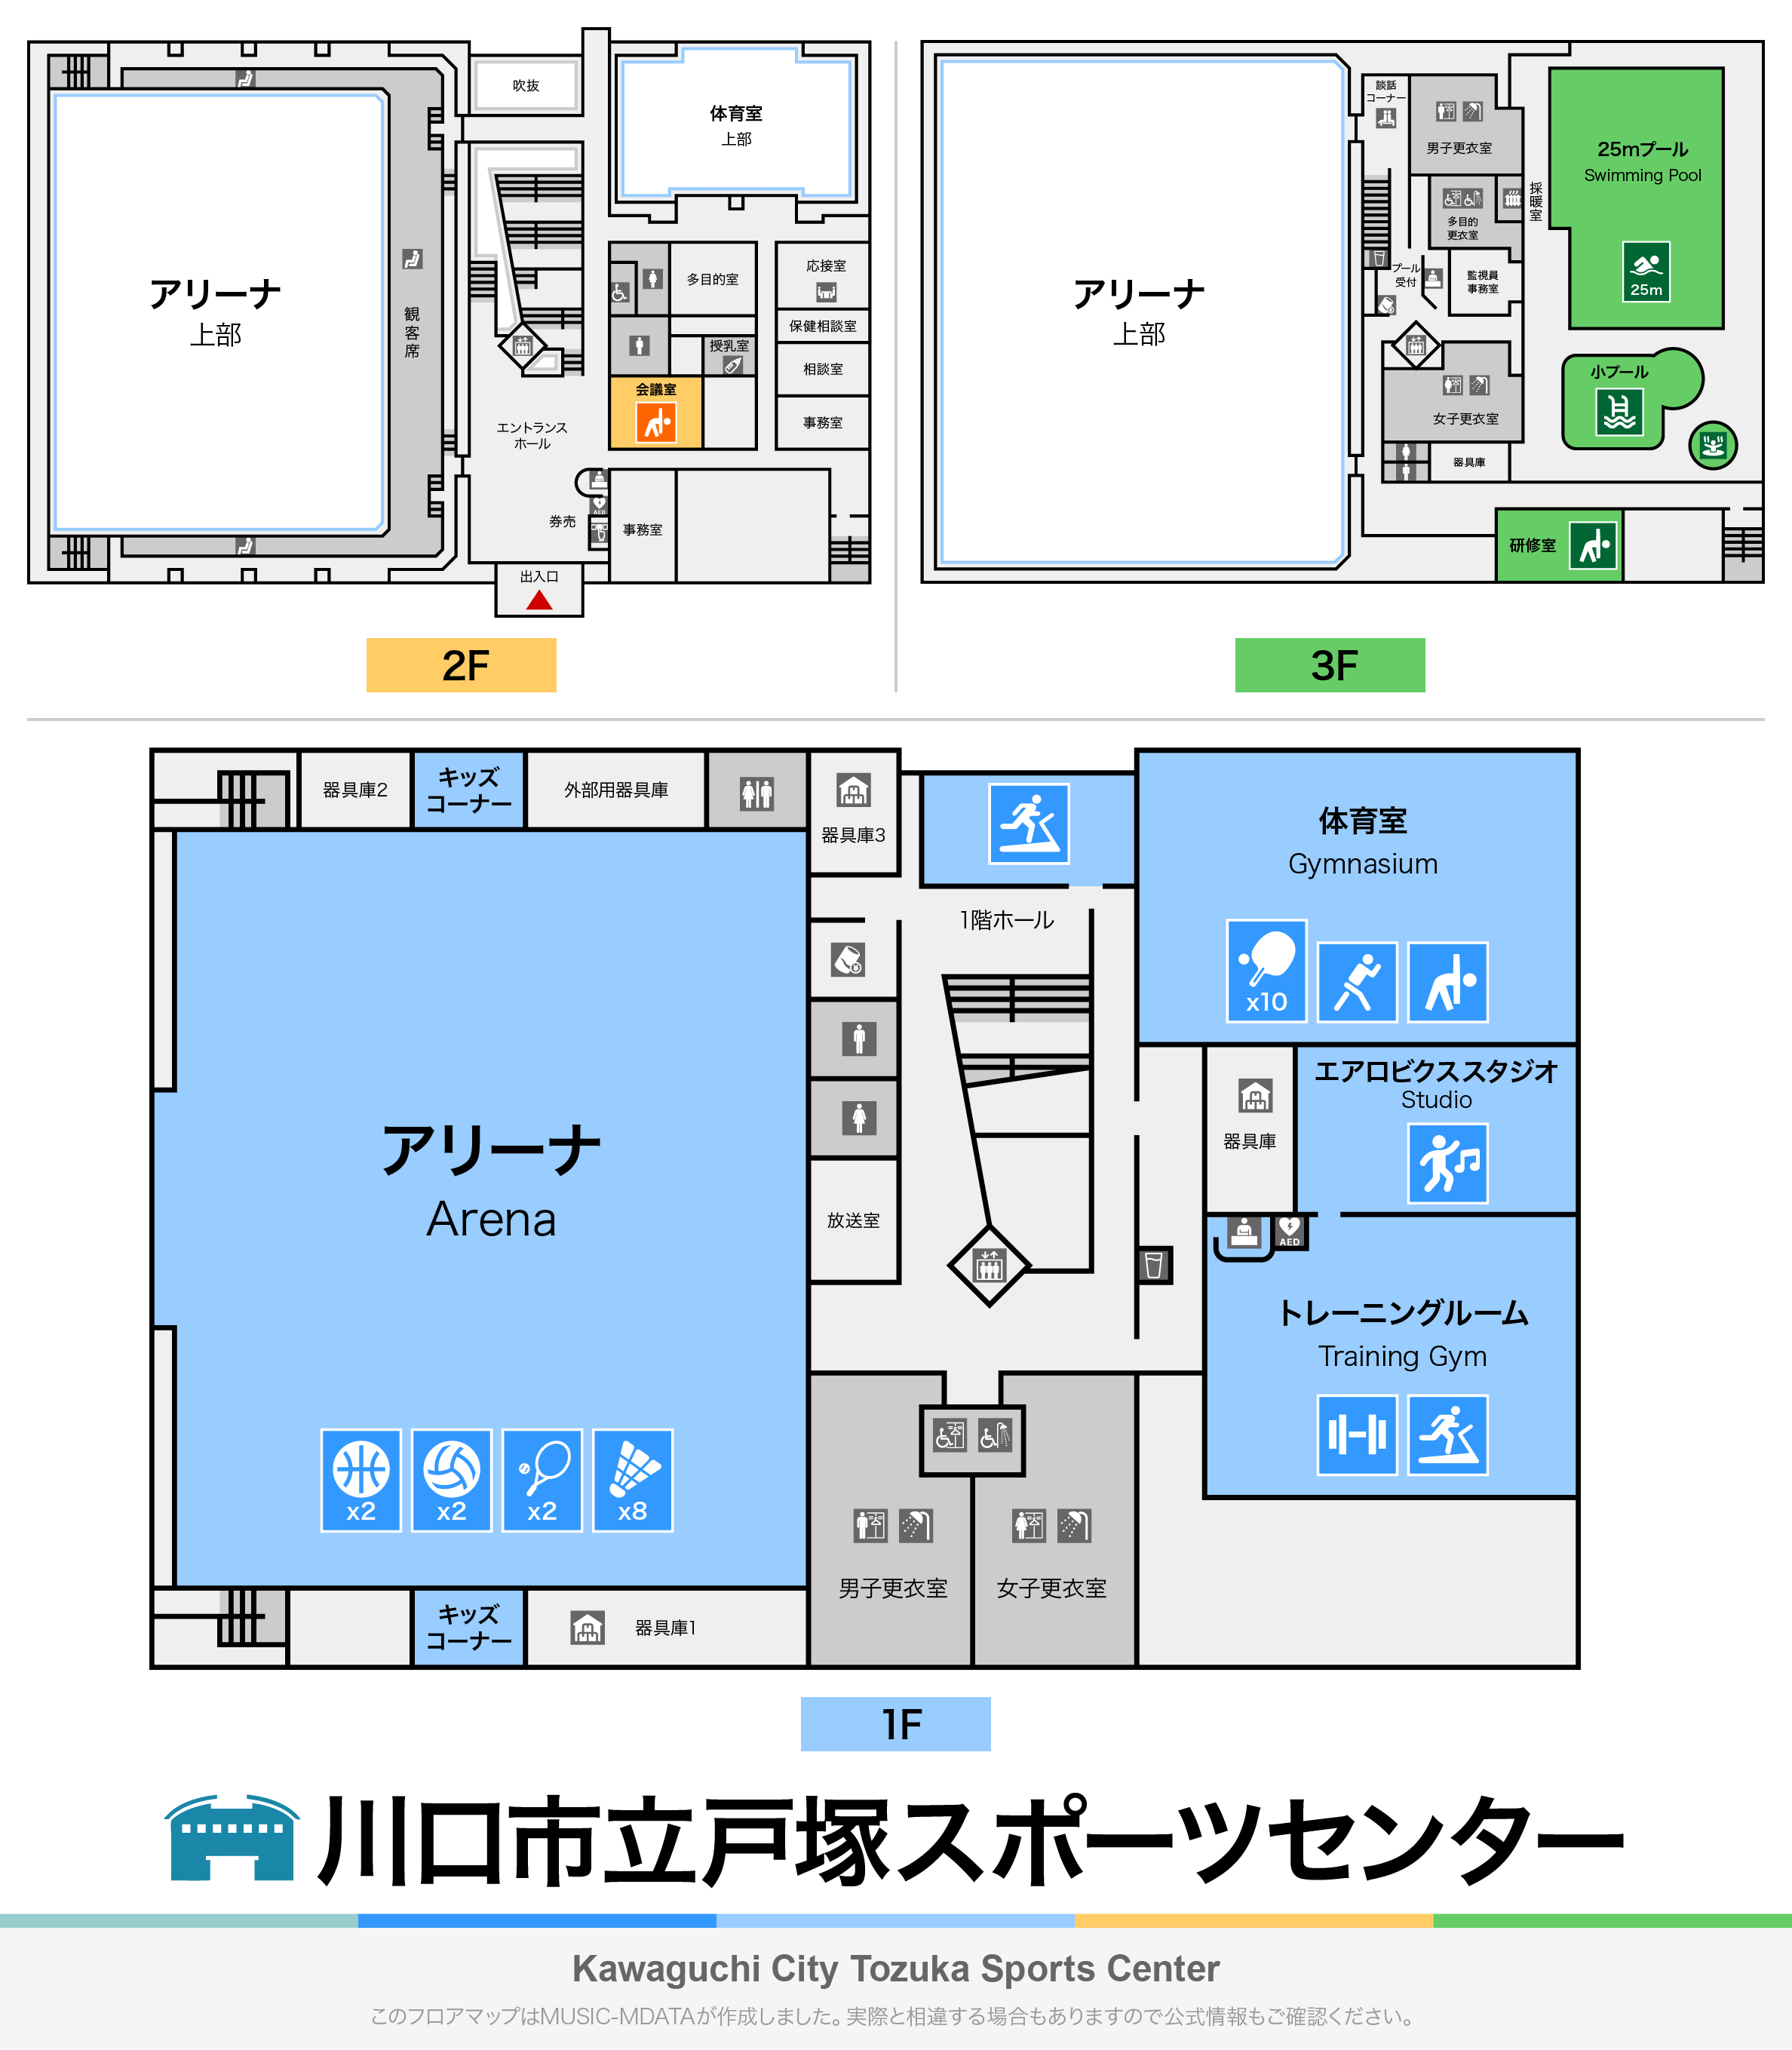 川口市立戸塚スポーツセンターのフロアマップ・ミュージアム